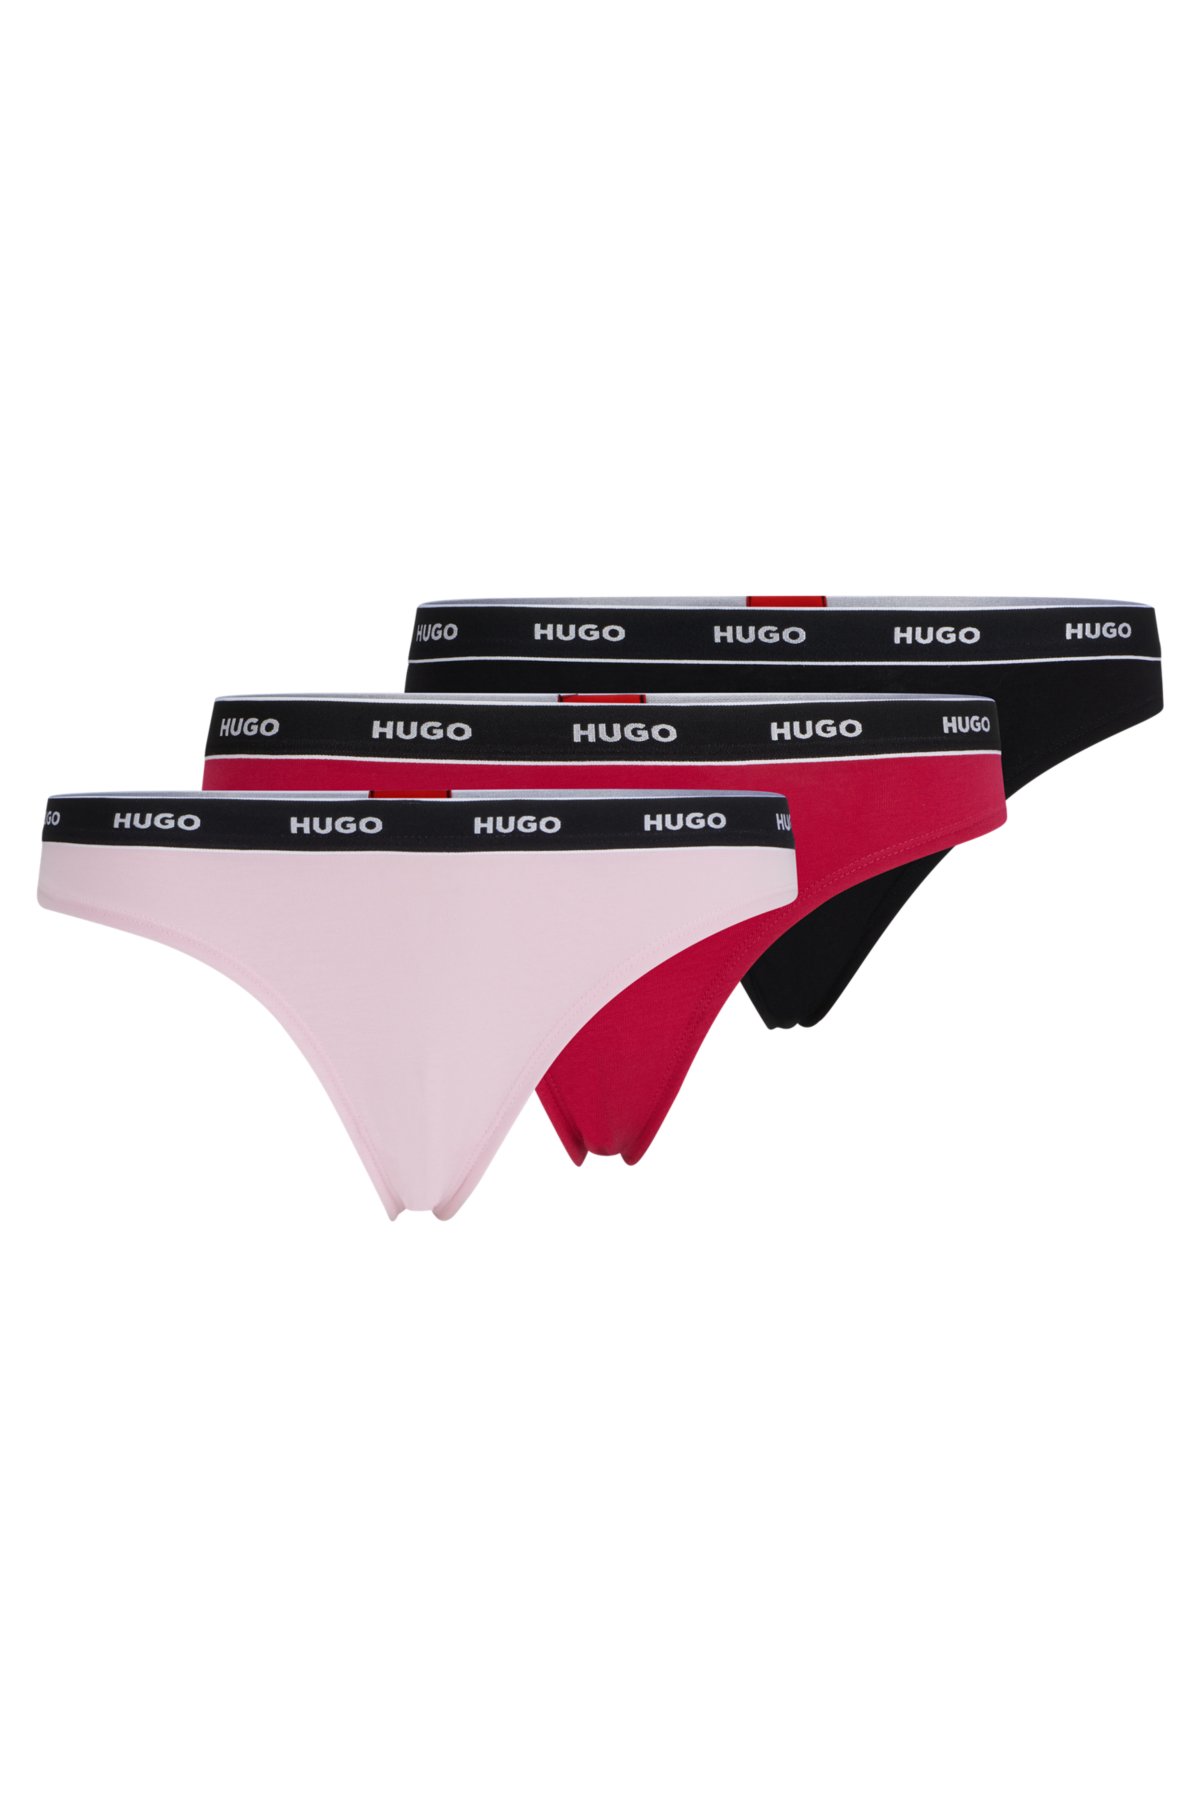 Playboy underwear ladies branded thong strings pack of 3 - Germany, New -  The wholesale platform